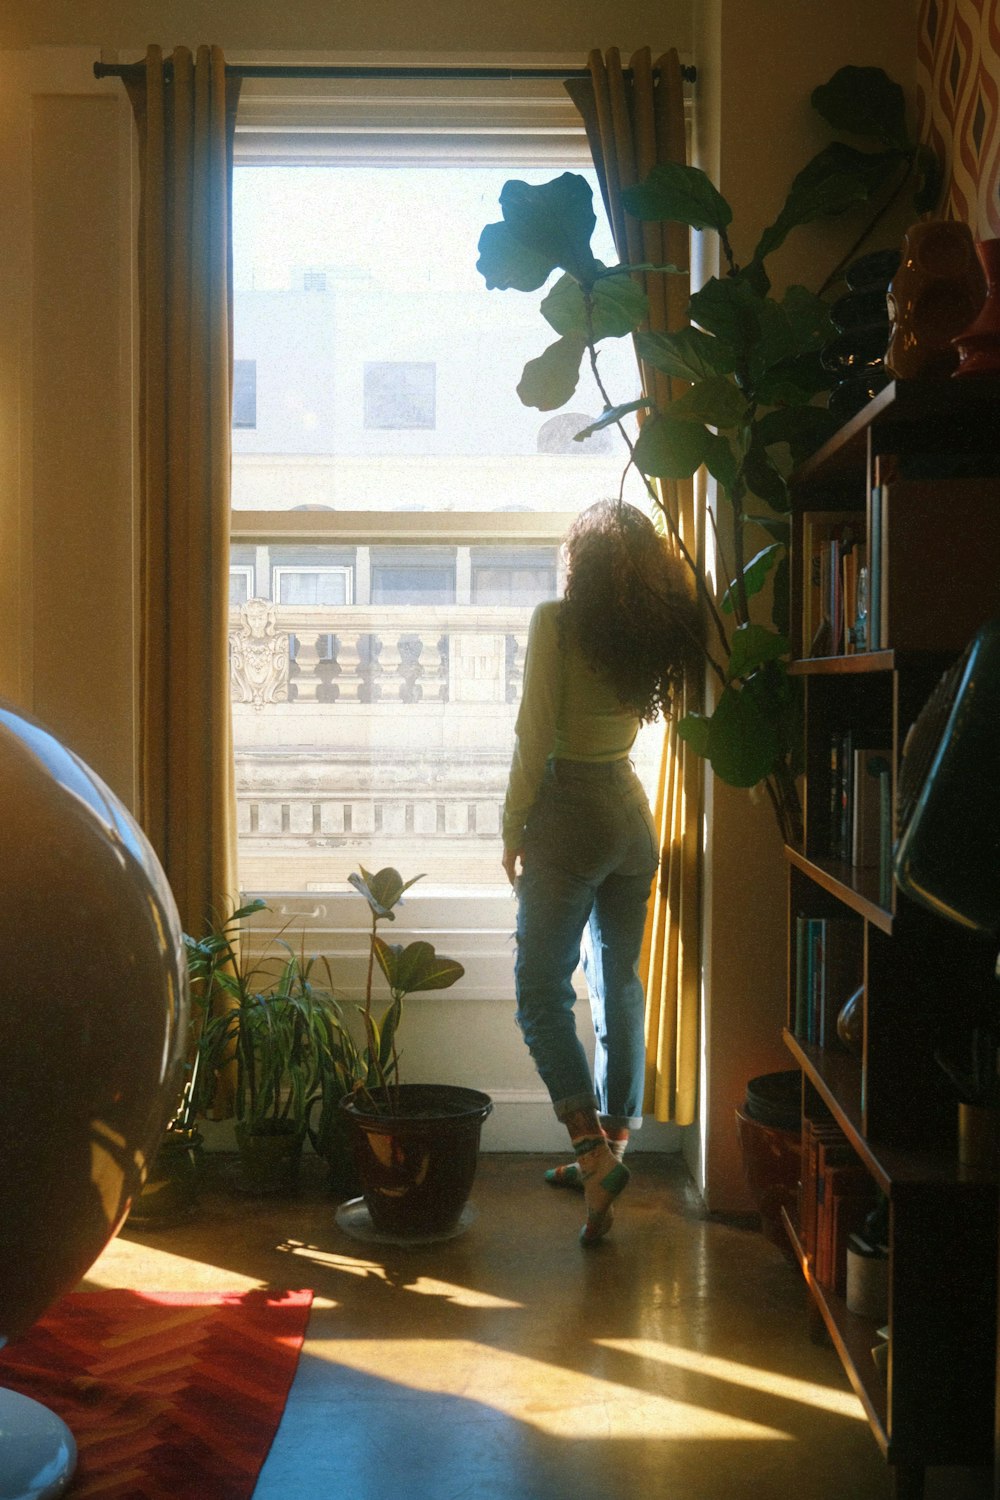 Una persona parada frente a una ventana junto a una planta en maceta